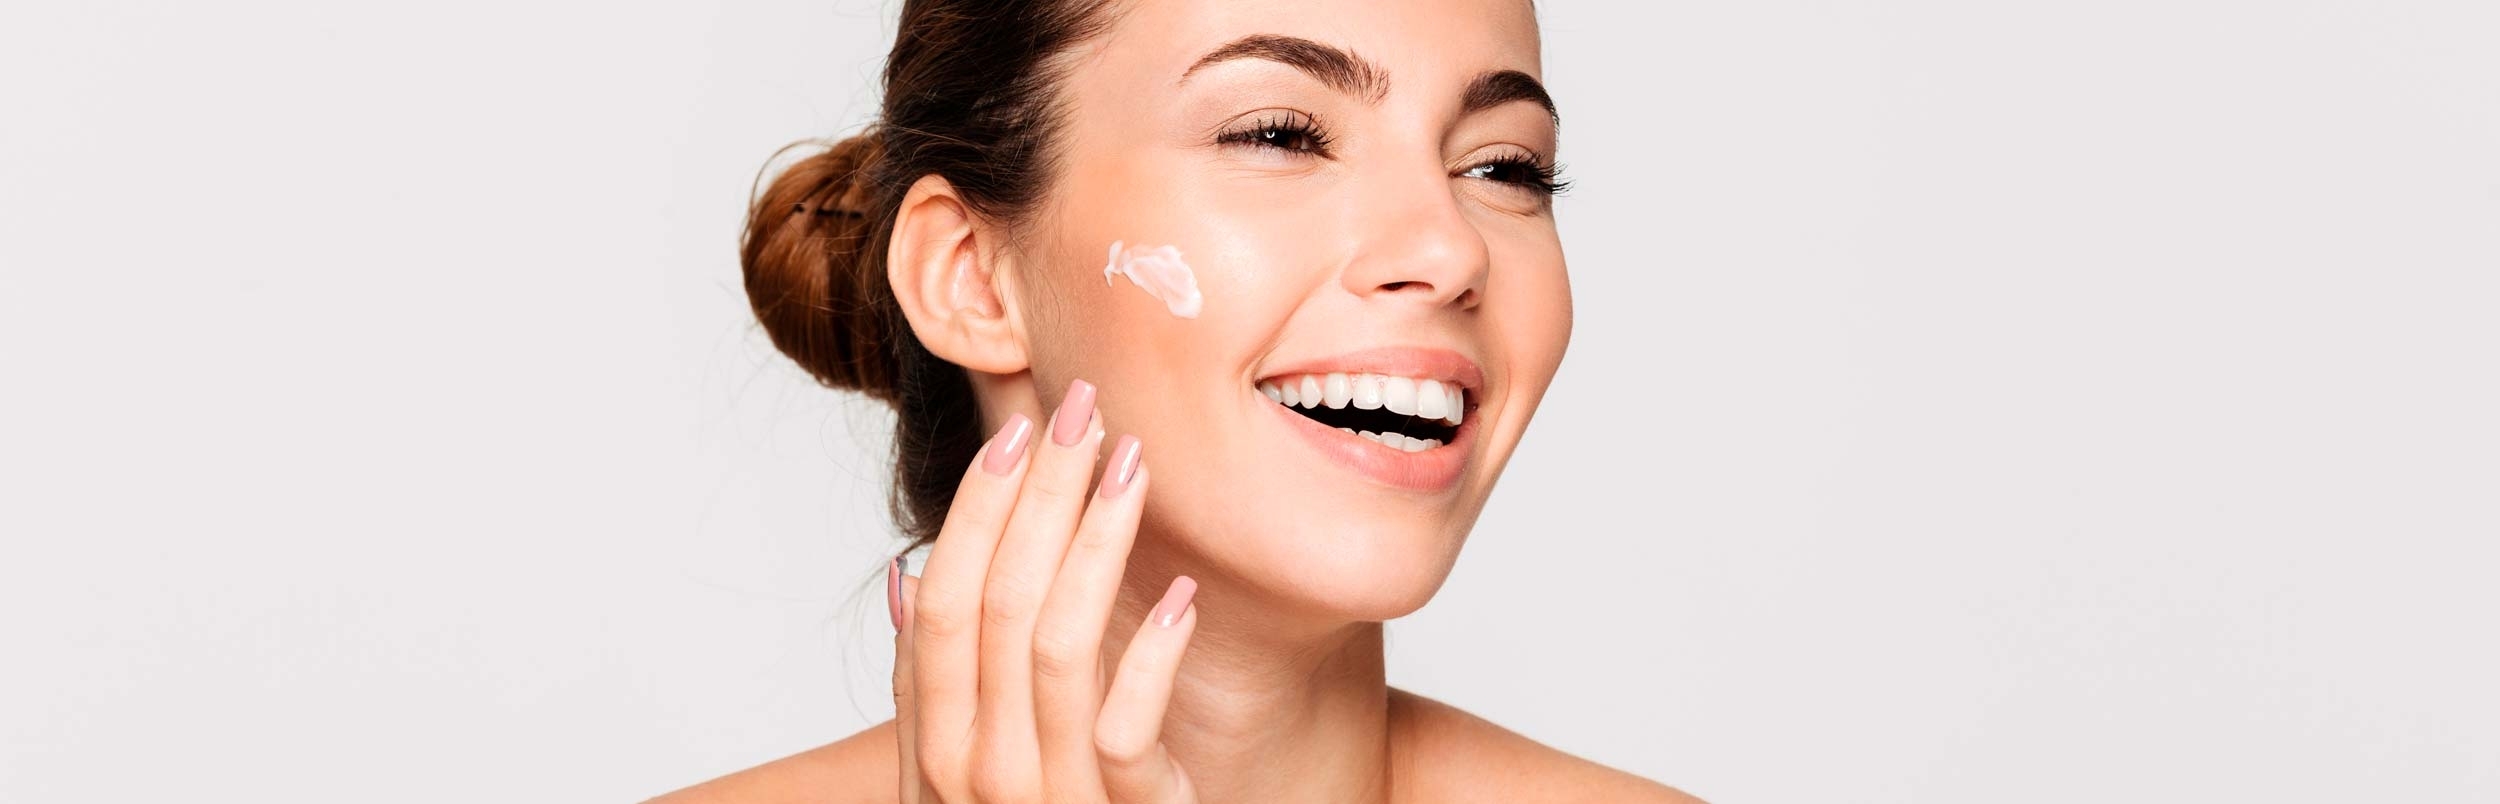 Trockene Haut – ZO® Skin Health Produkte